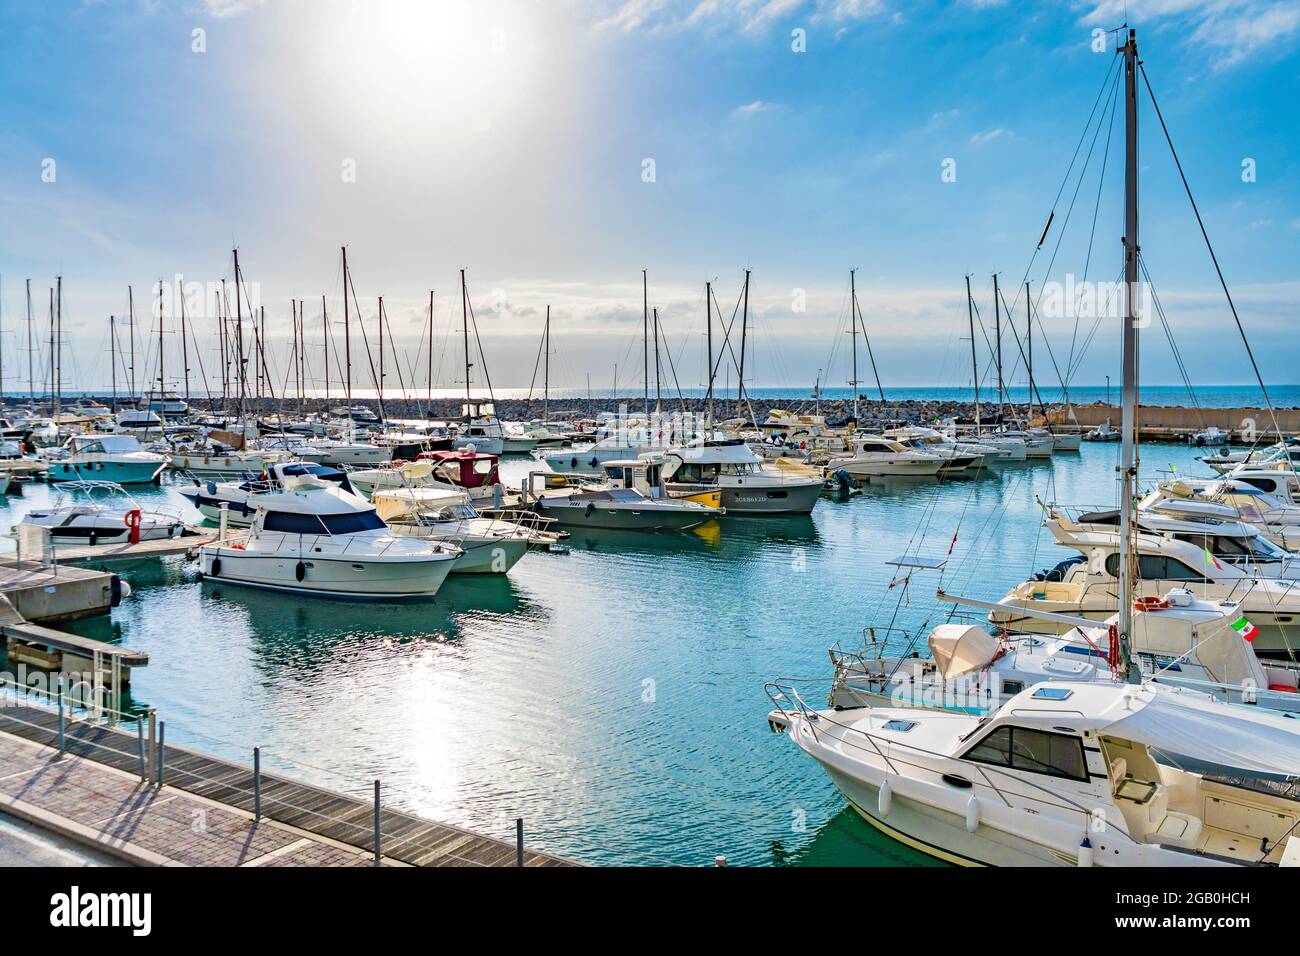 Der Hafen und die Marina von San Vincenzo mit festfahrenden Booten in San Vincenzo, Provinz Livorno, Toskana Region, Italien Stockfoto